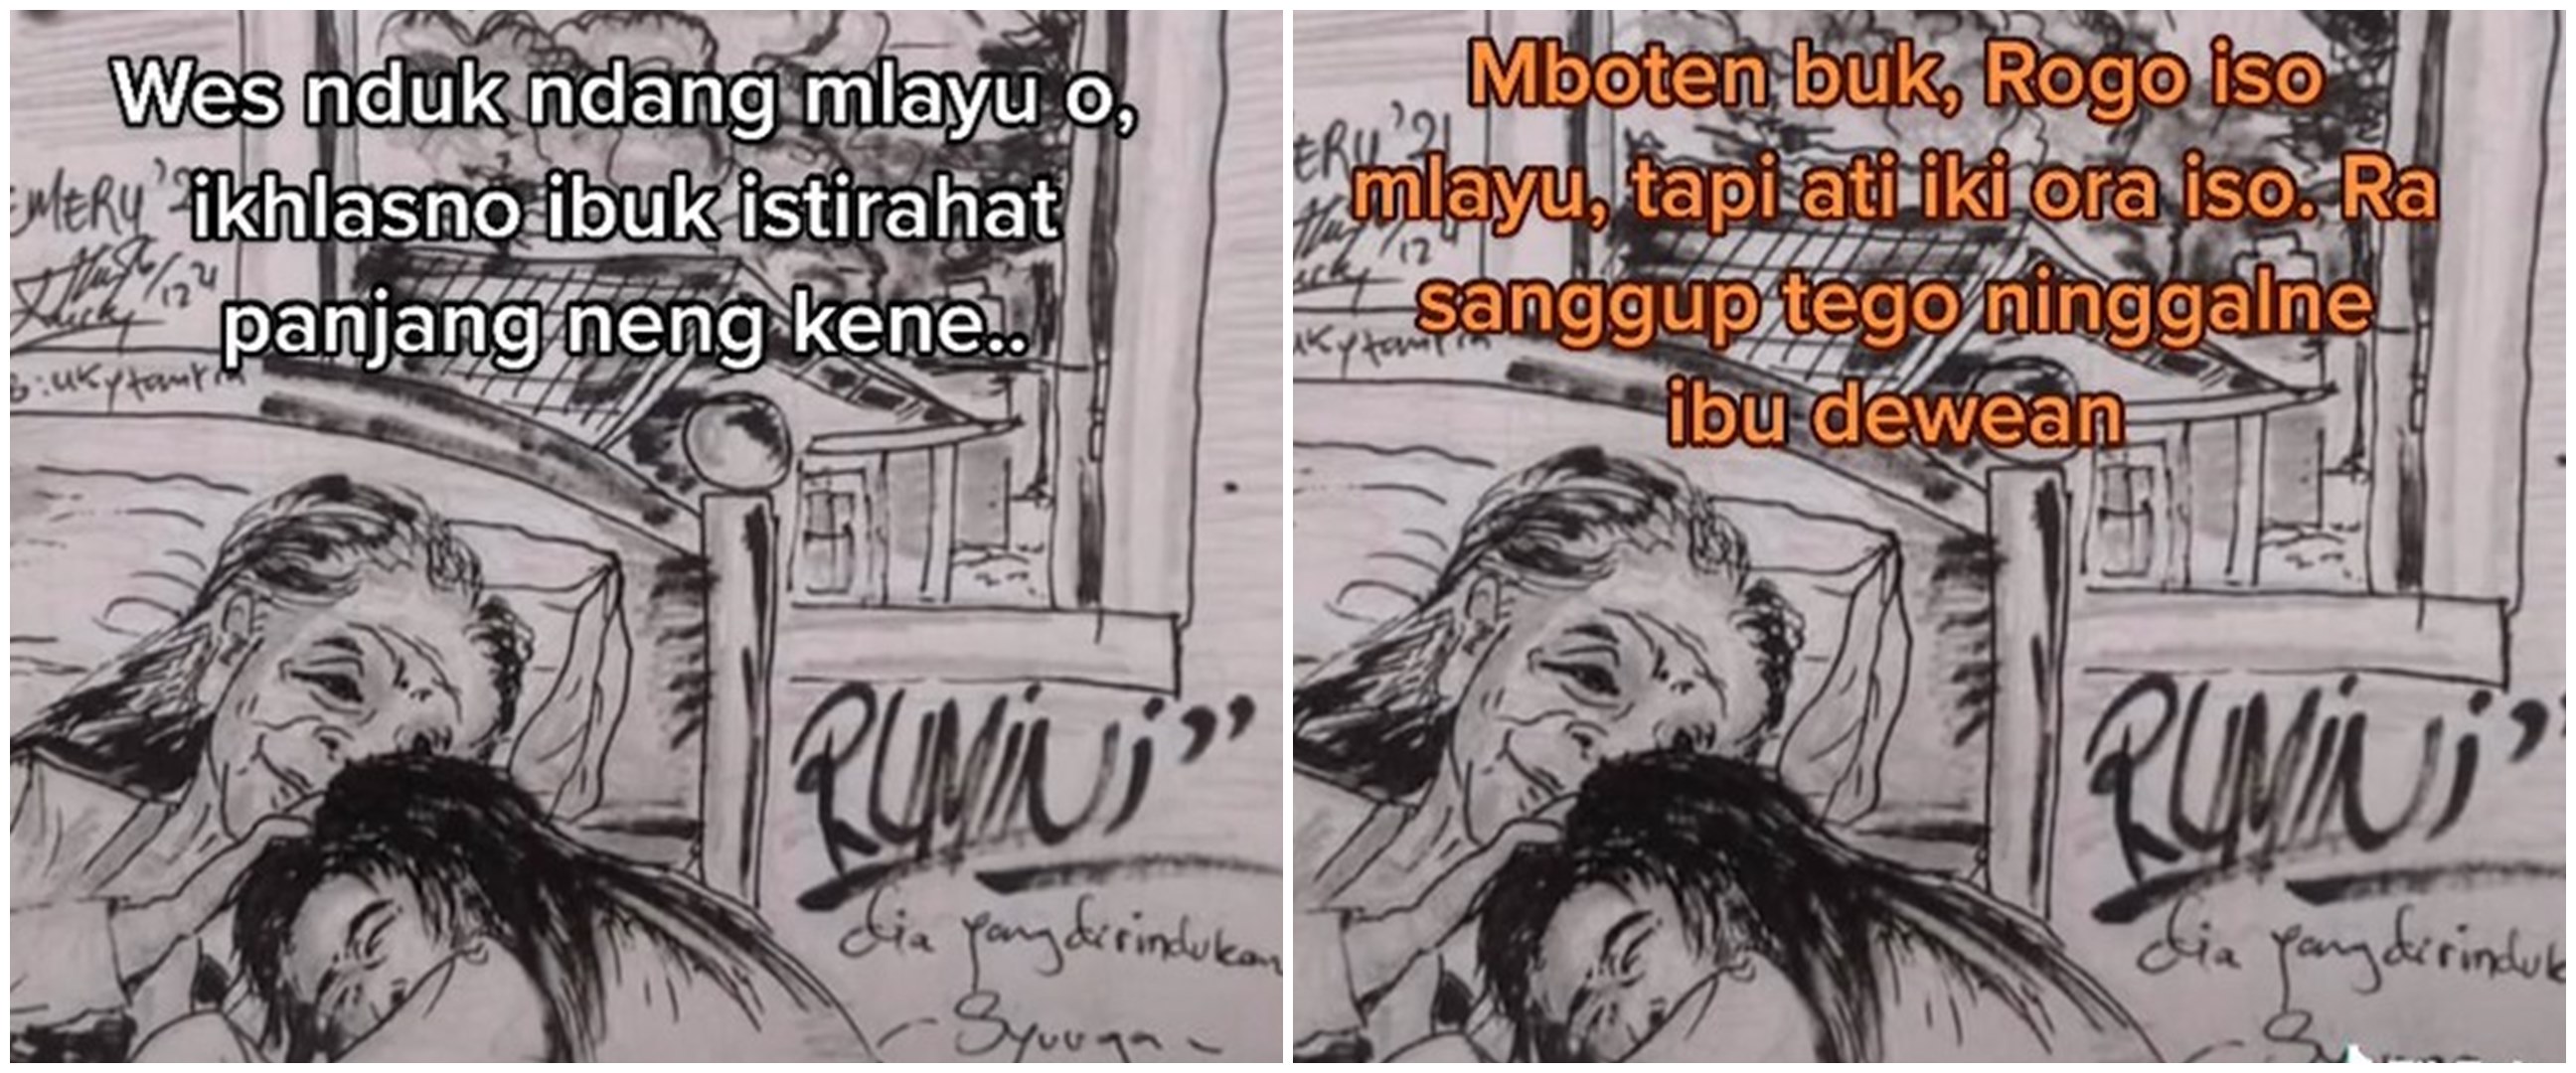 Kisah Rumini, korban erupsi Semeru meninggal berpelukan dengan ibunya